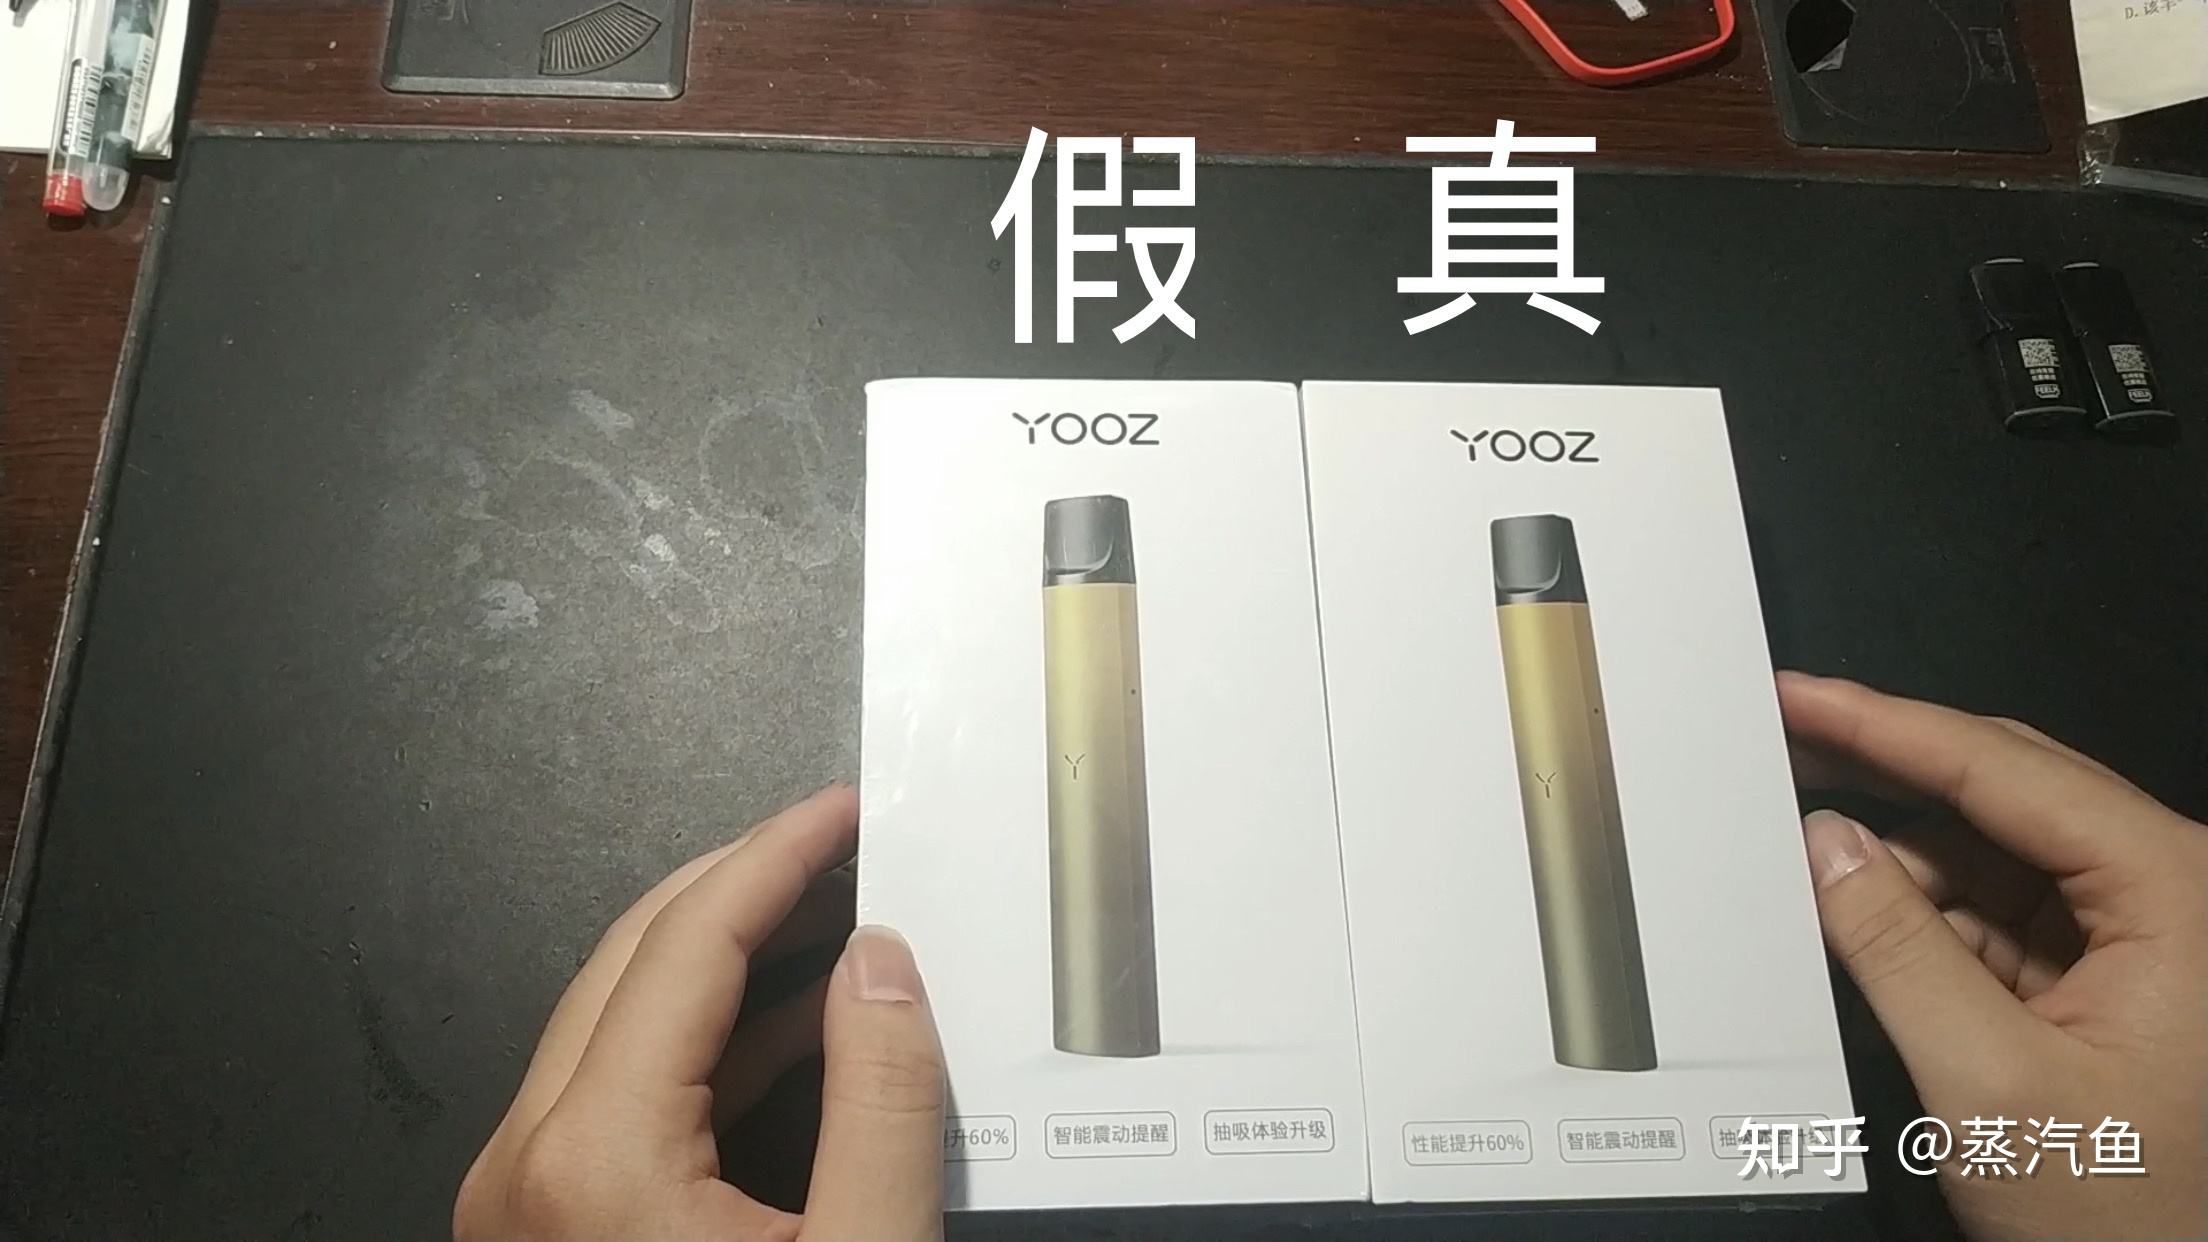 yooz二代后面yooz标志的简单介绍